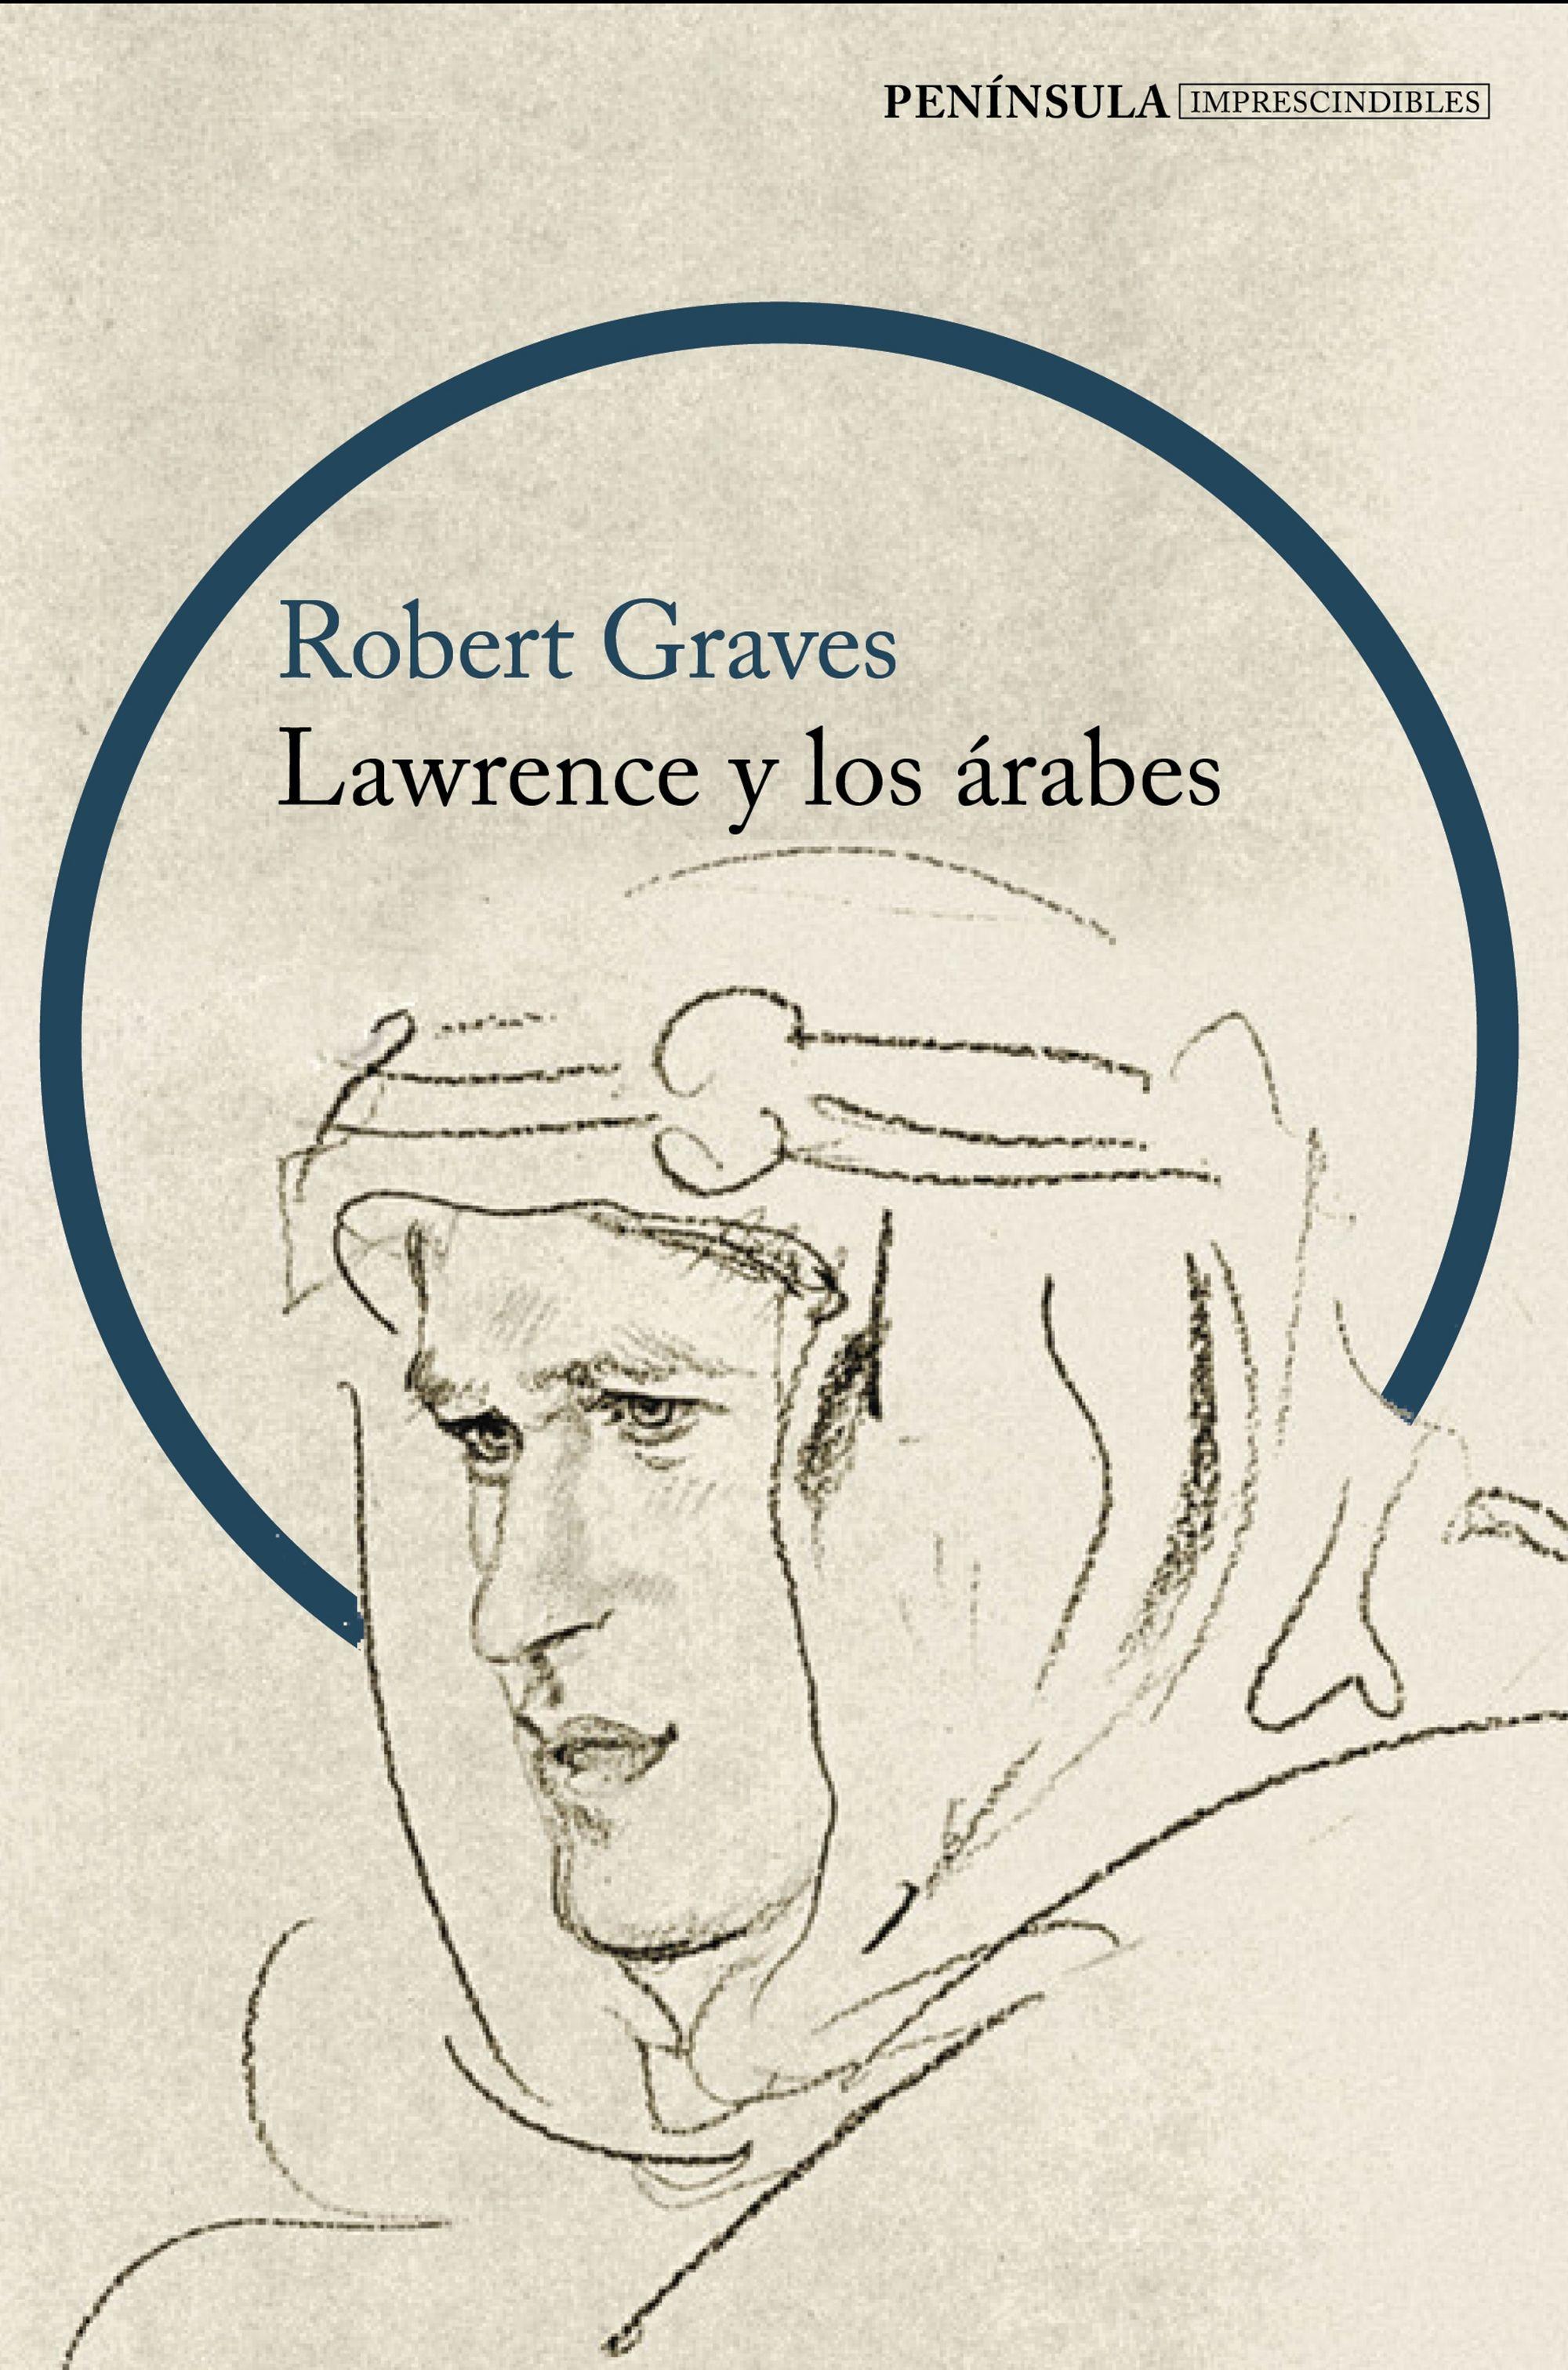 Lawrence y los árabes "Un retrato fascinante de Lawrence de Arabia". 